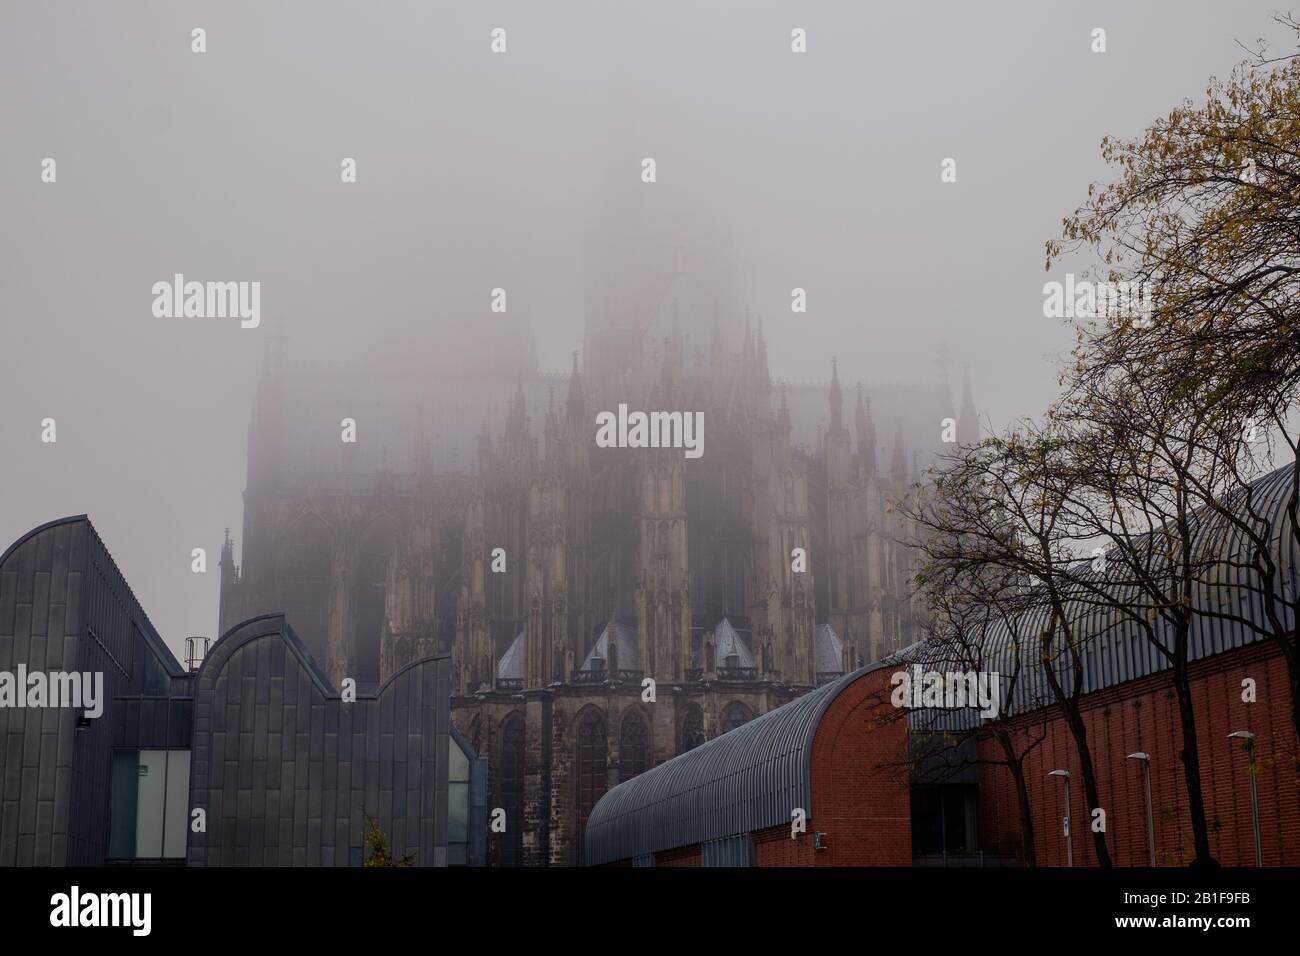 L'arrière de la cathédrale de Cologne est recouvert de brume. Les spires sont presque invisibles. Banque D'Images